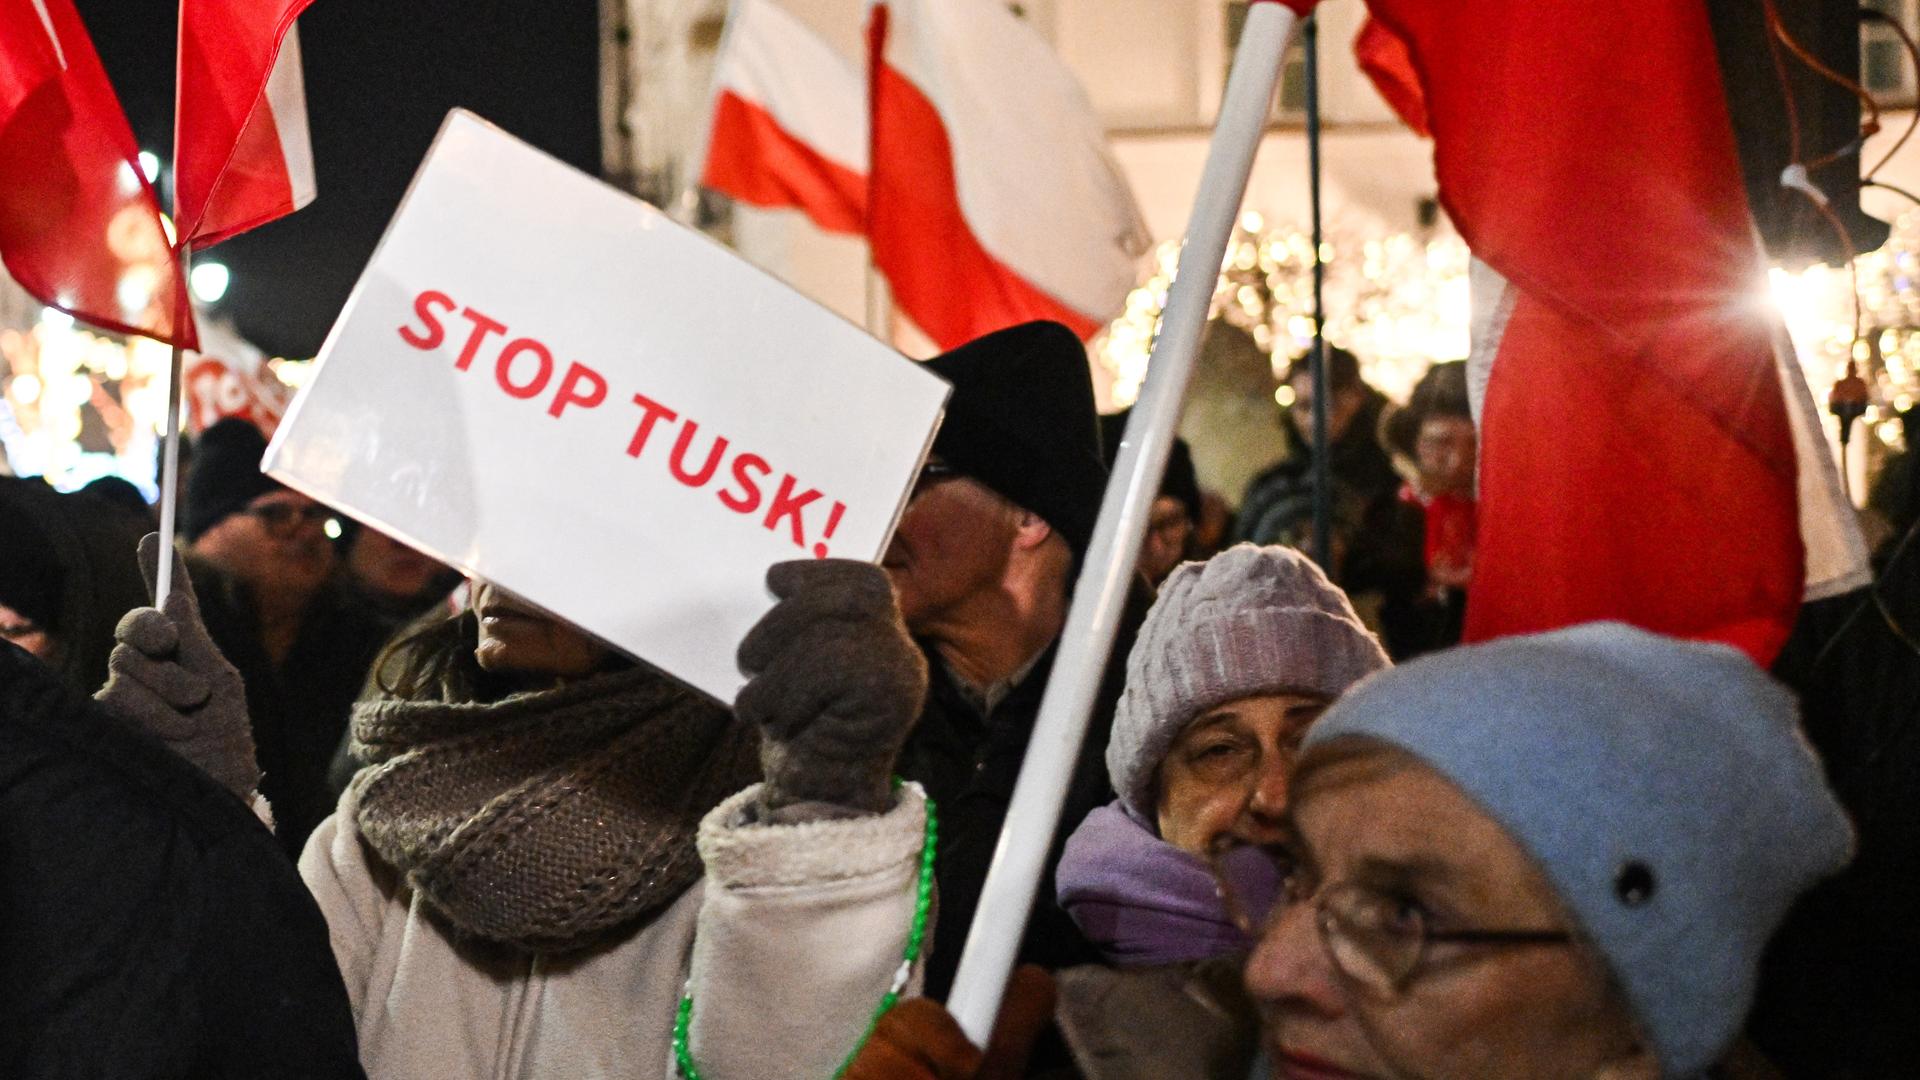 Menschen halten polnische Fahnen und Protestschilder in die Höhe, auf einem steht "Stop Tusk"